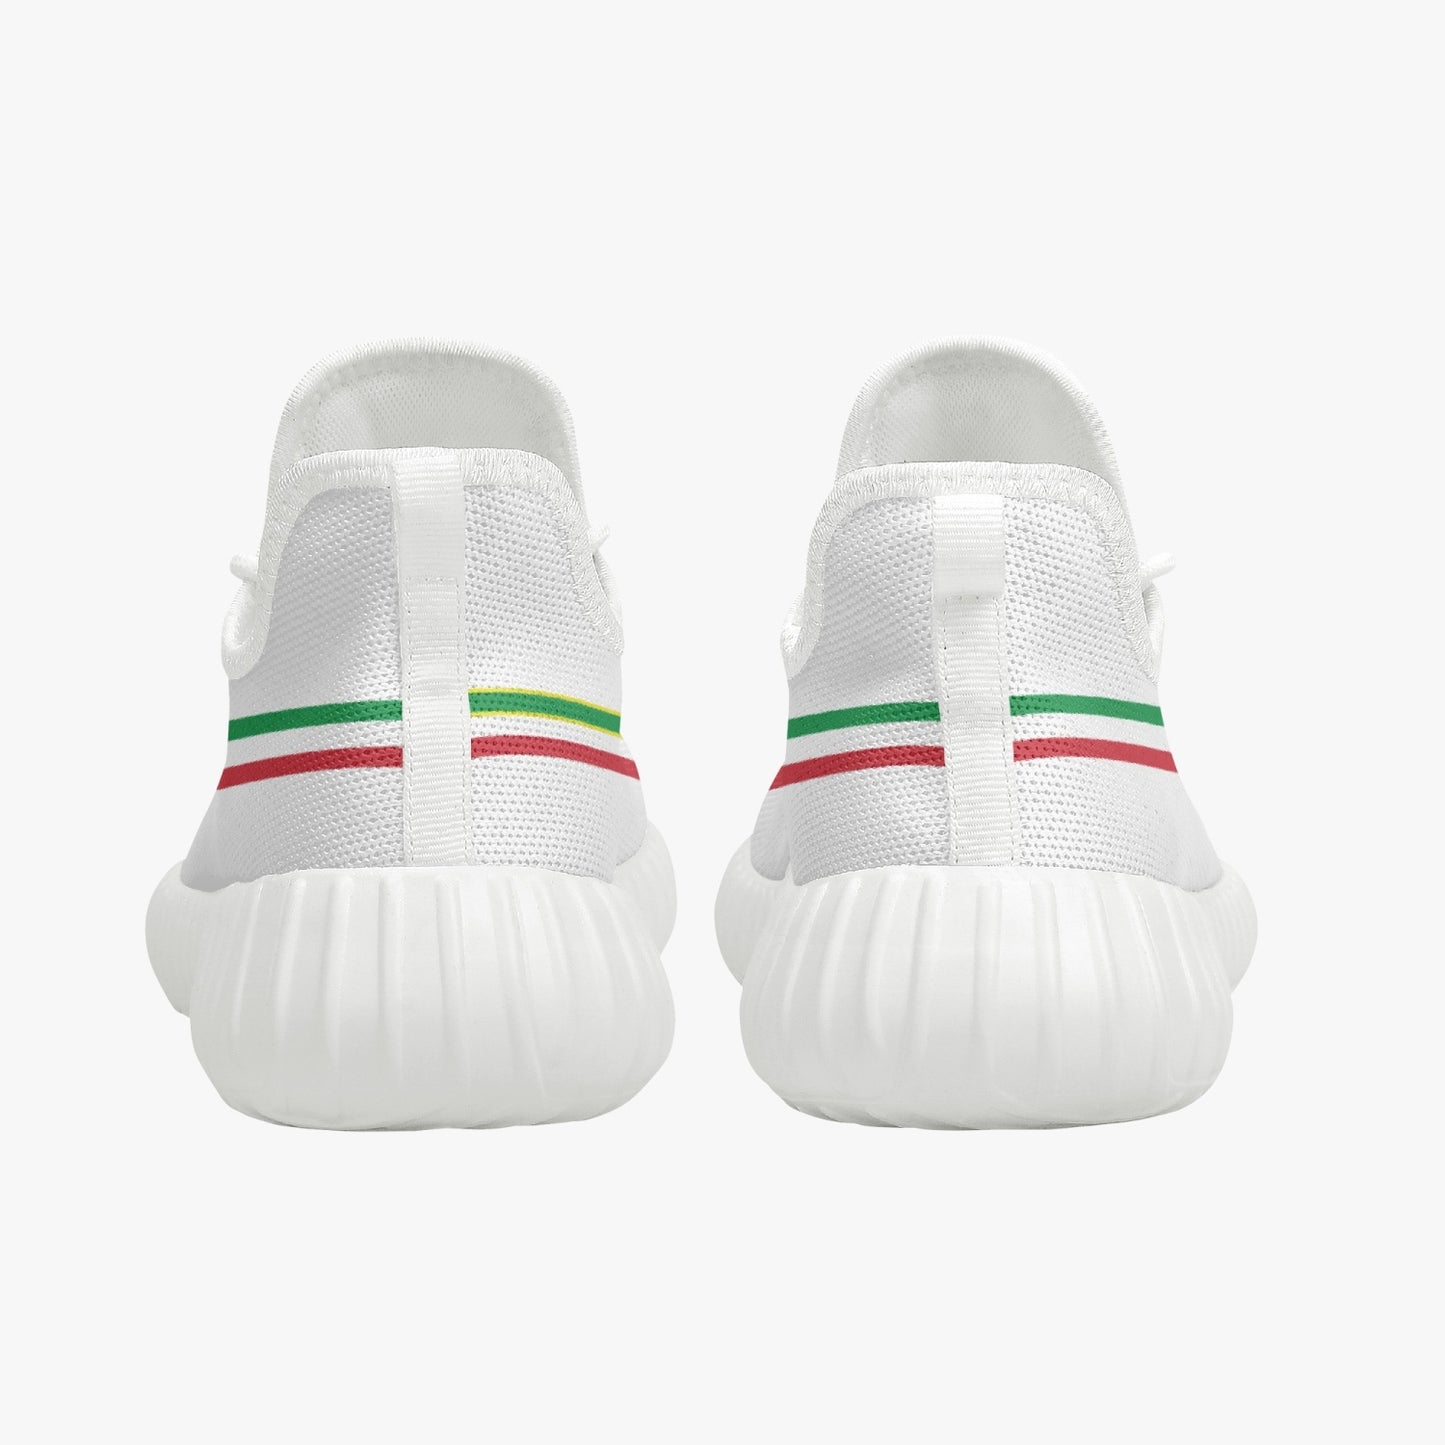 Knit Sneakers - Italia - women's